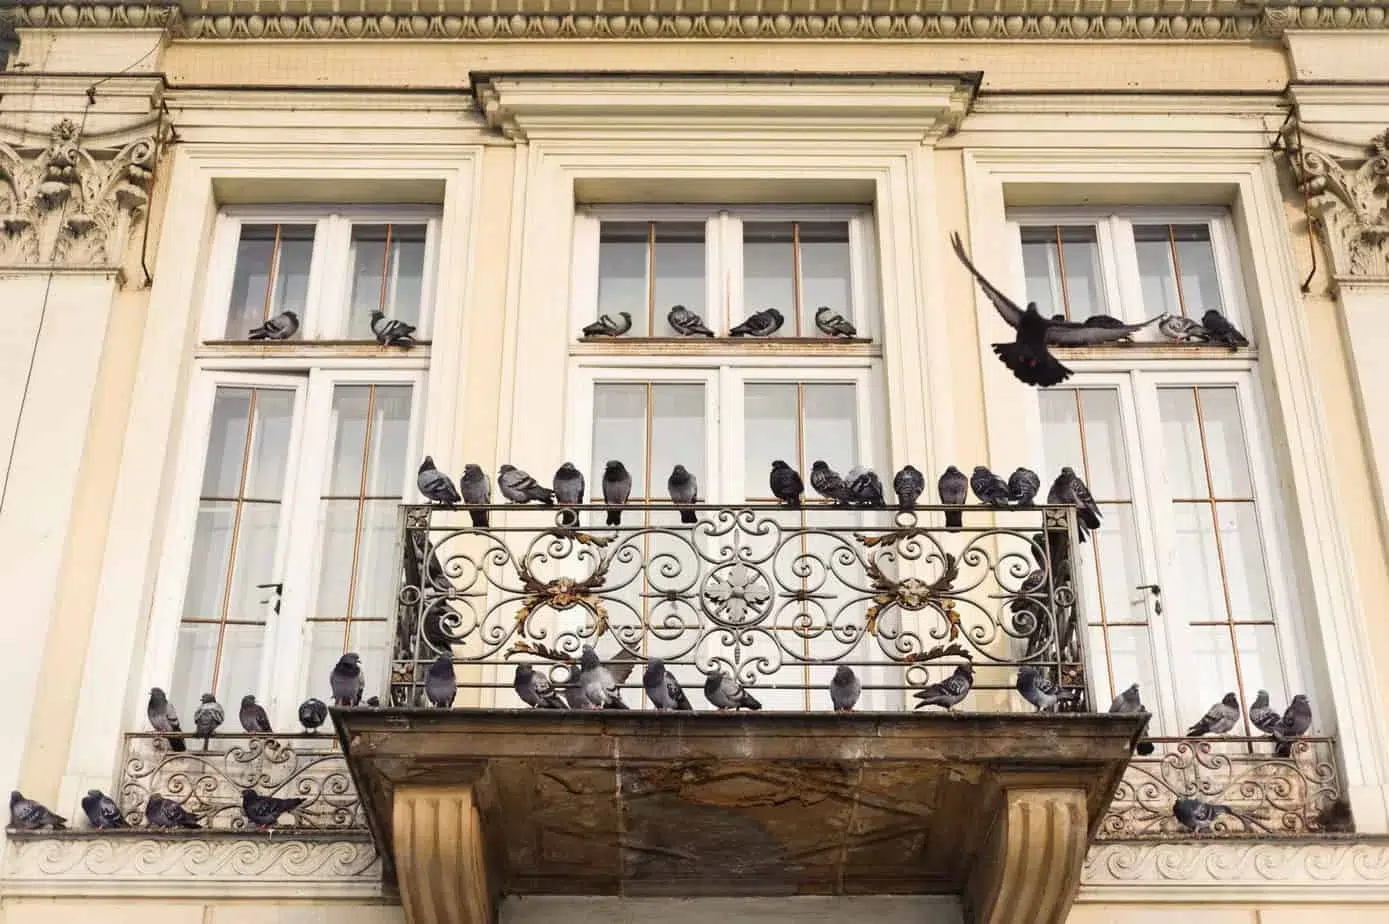 Comment éloigner les pigeons de votre balcon ?, EDN